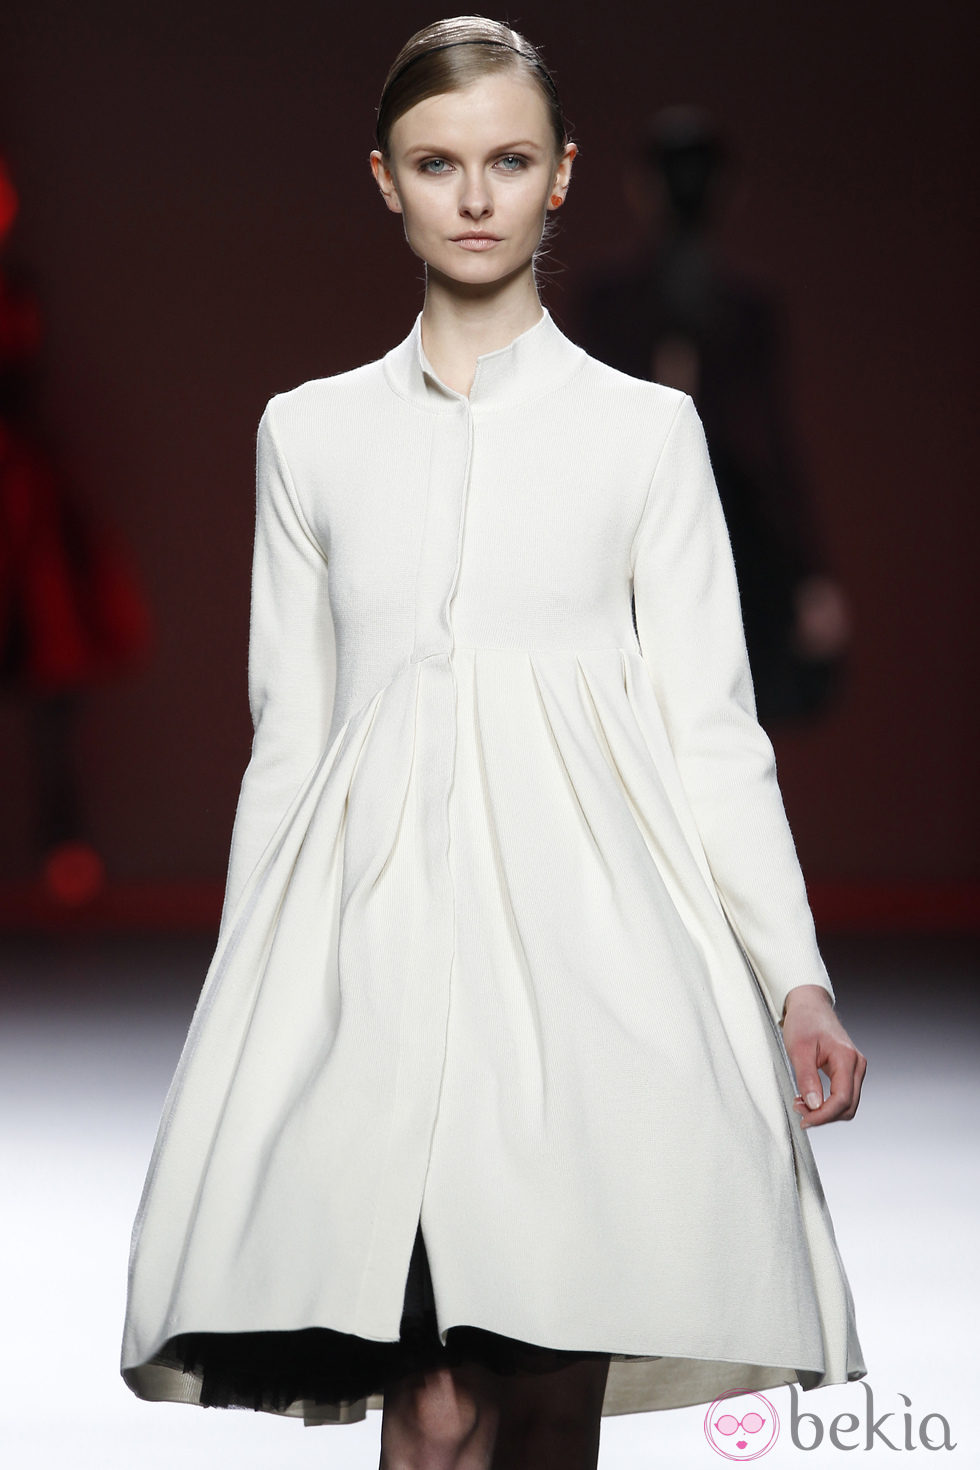 Vestido blanco de manga larga de la colección otoño/invierno 2012/2013 de Amaya Arzuaga